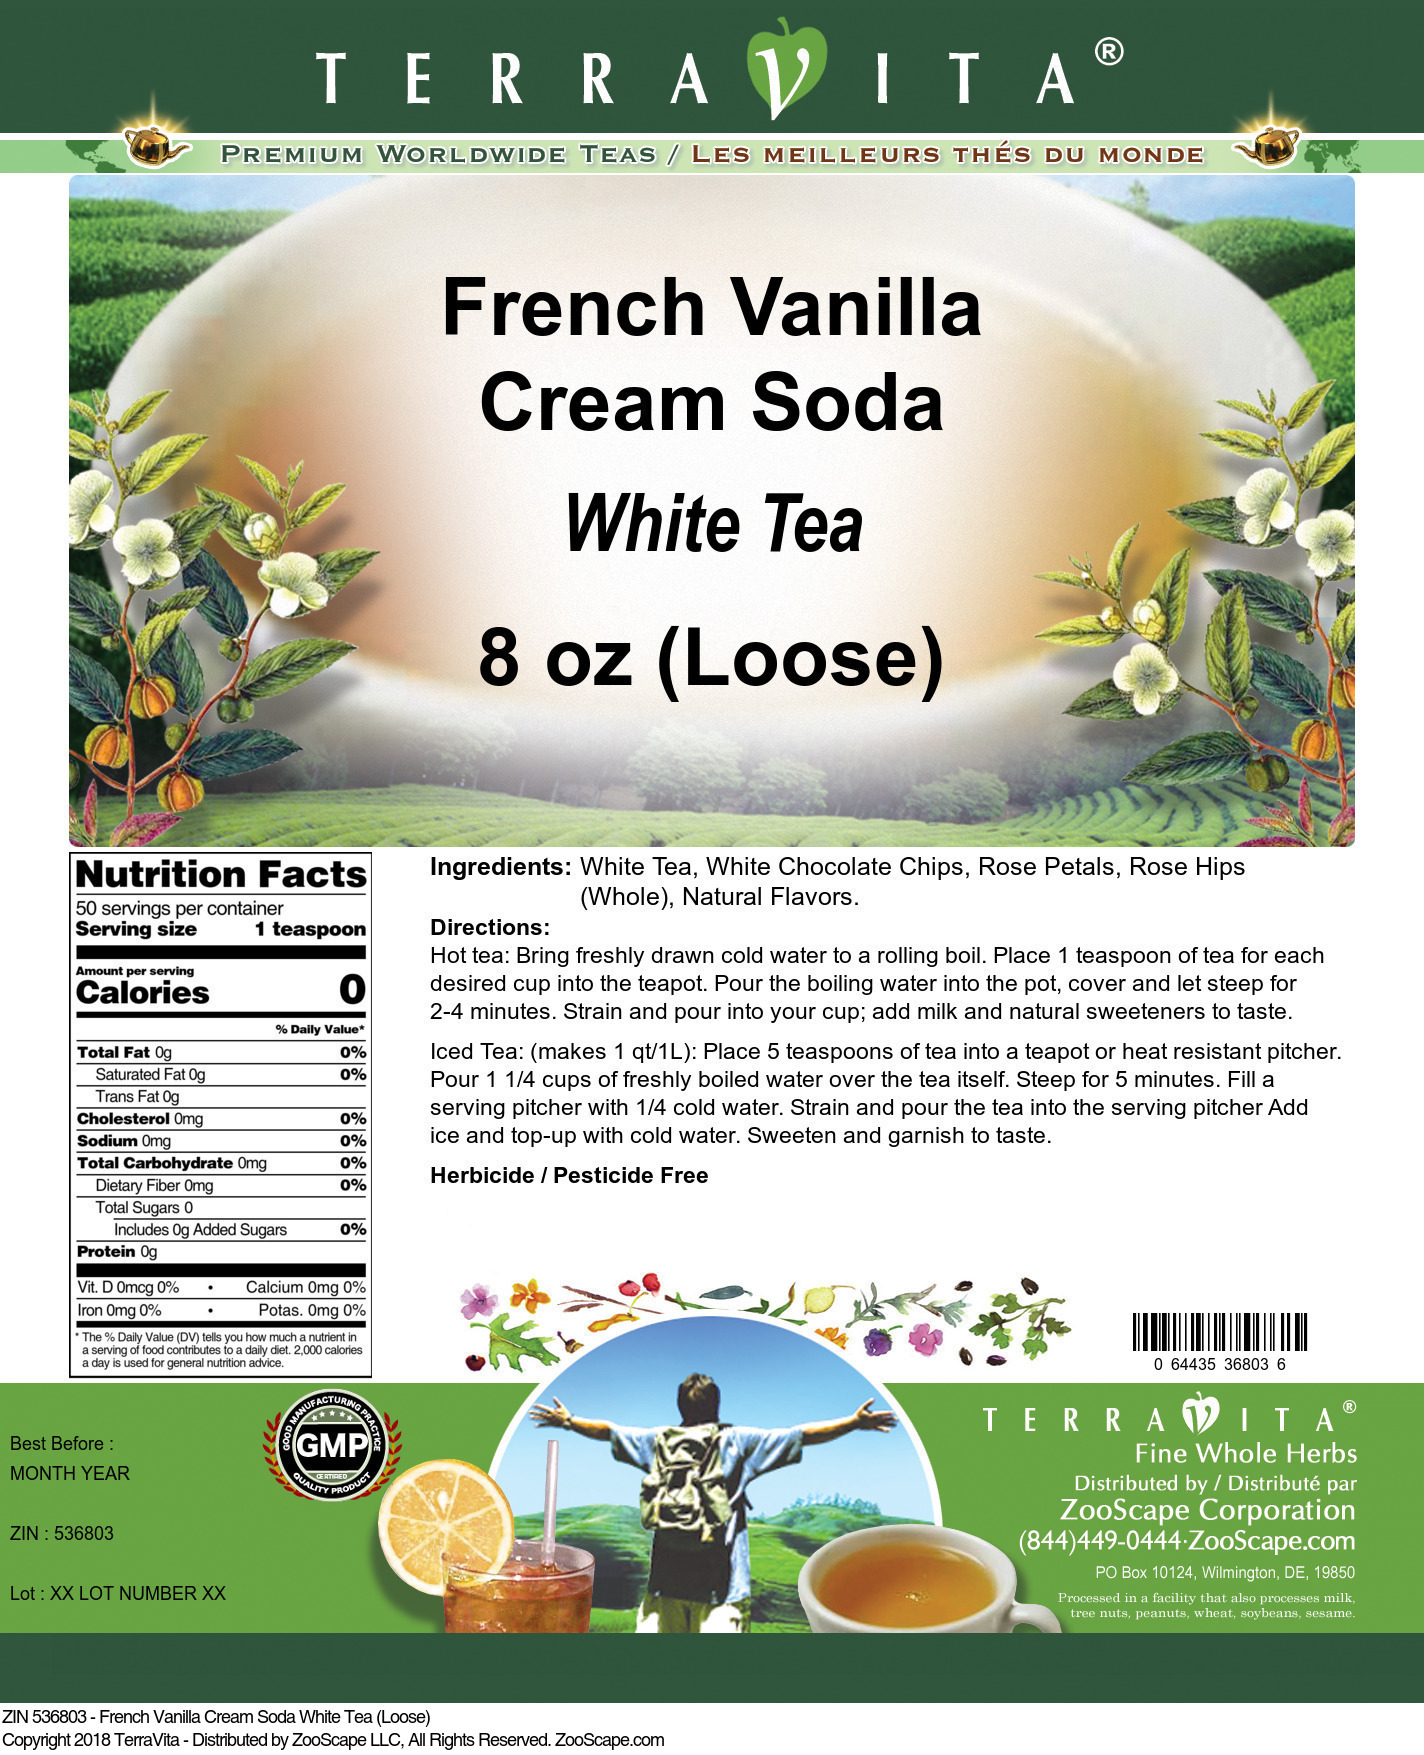 French Vanilla Cream Soda White Tea (Loose) - Label